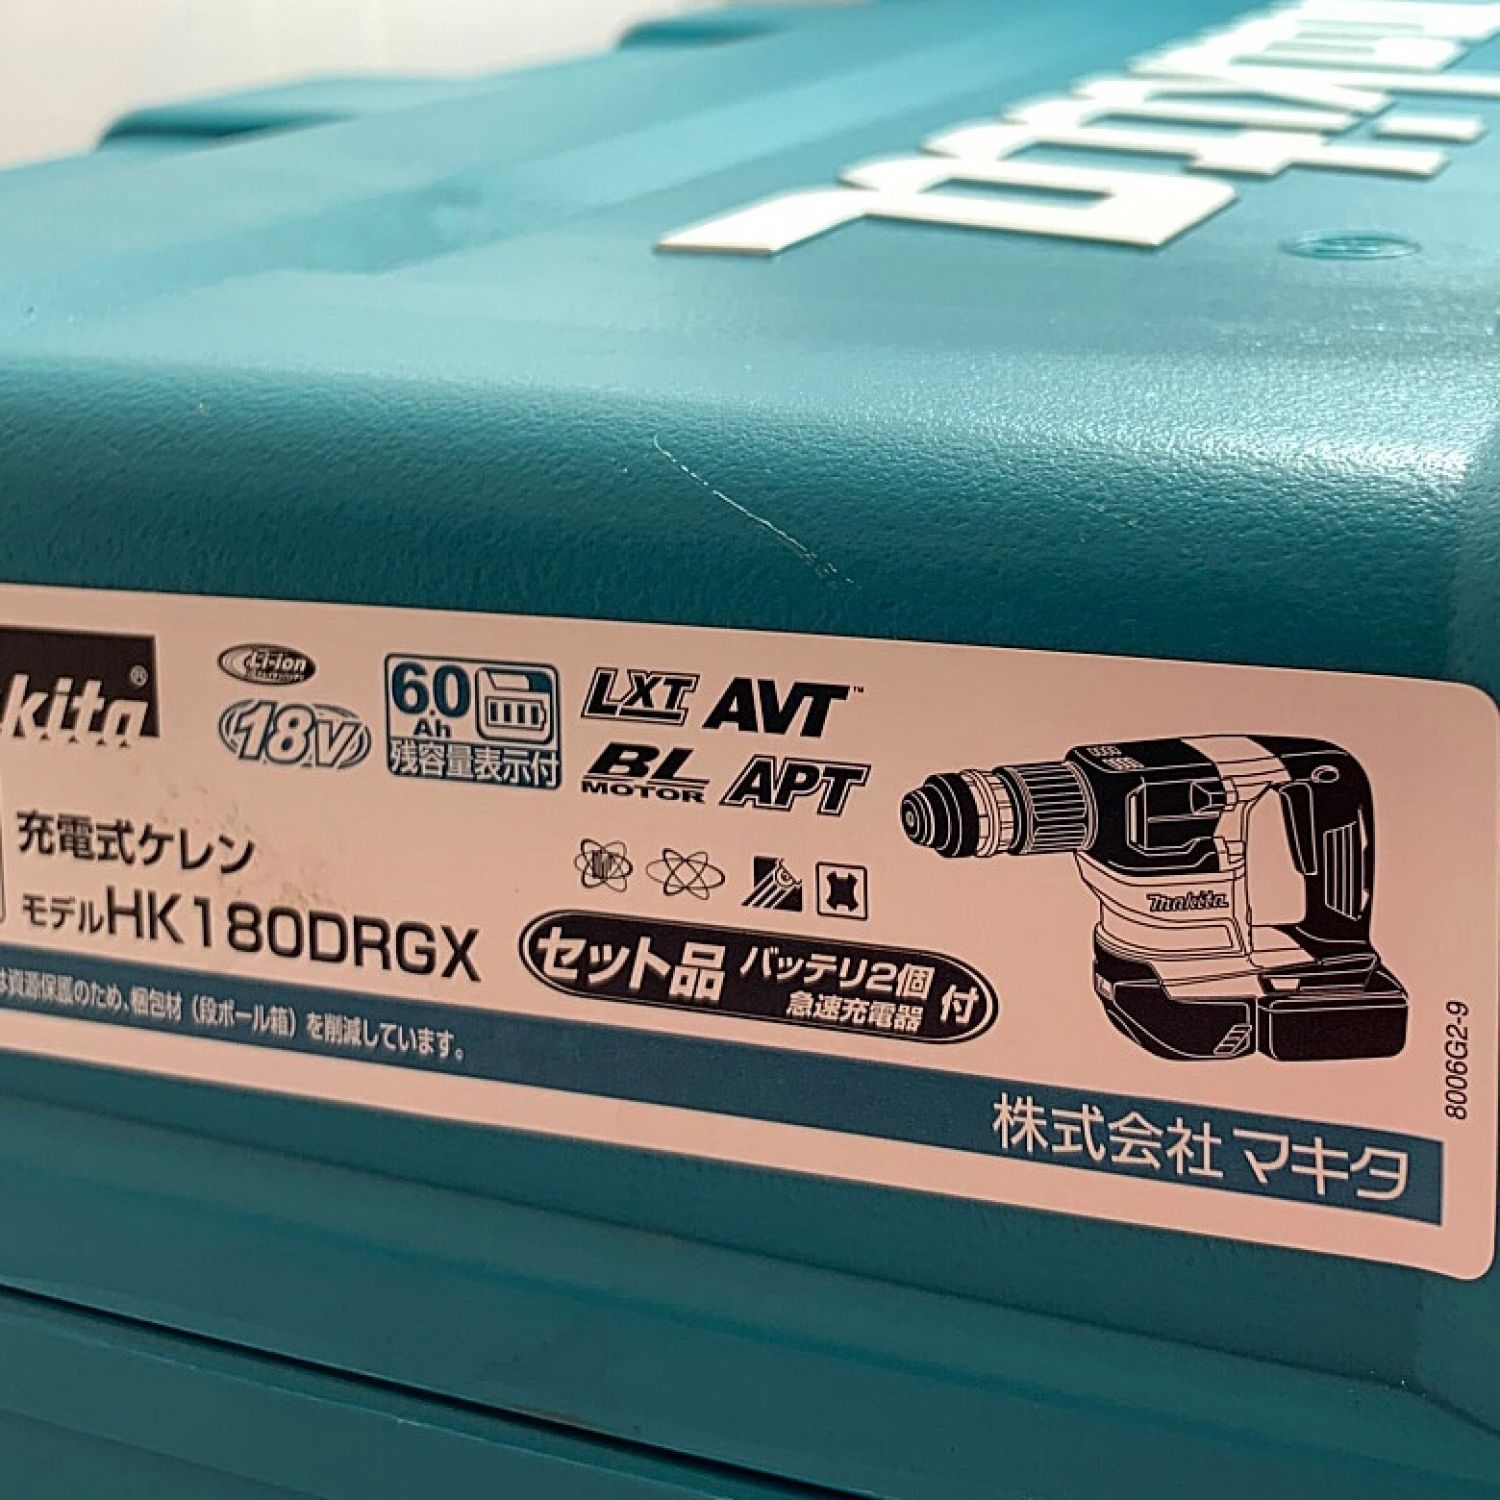 日本全国送料無料 マキタ 18V 充電式ケレン HK180DRGX 6.0Ah